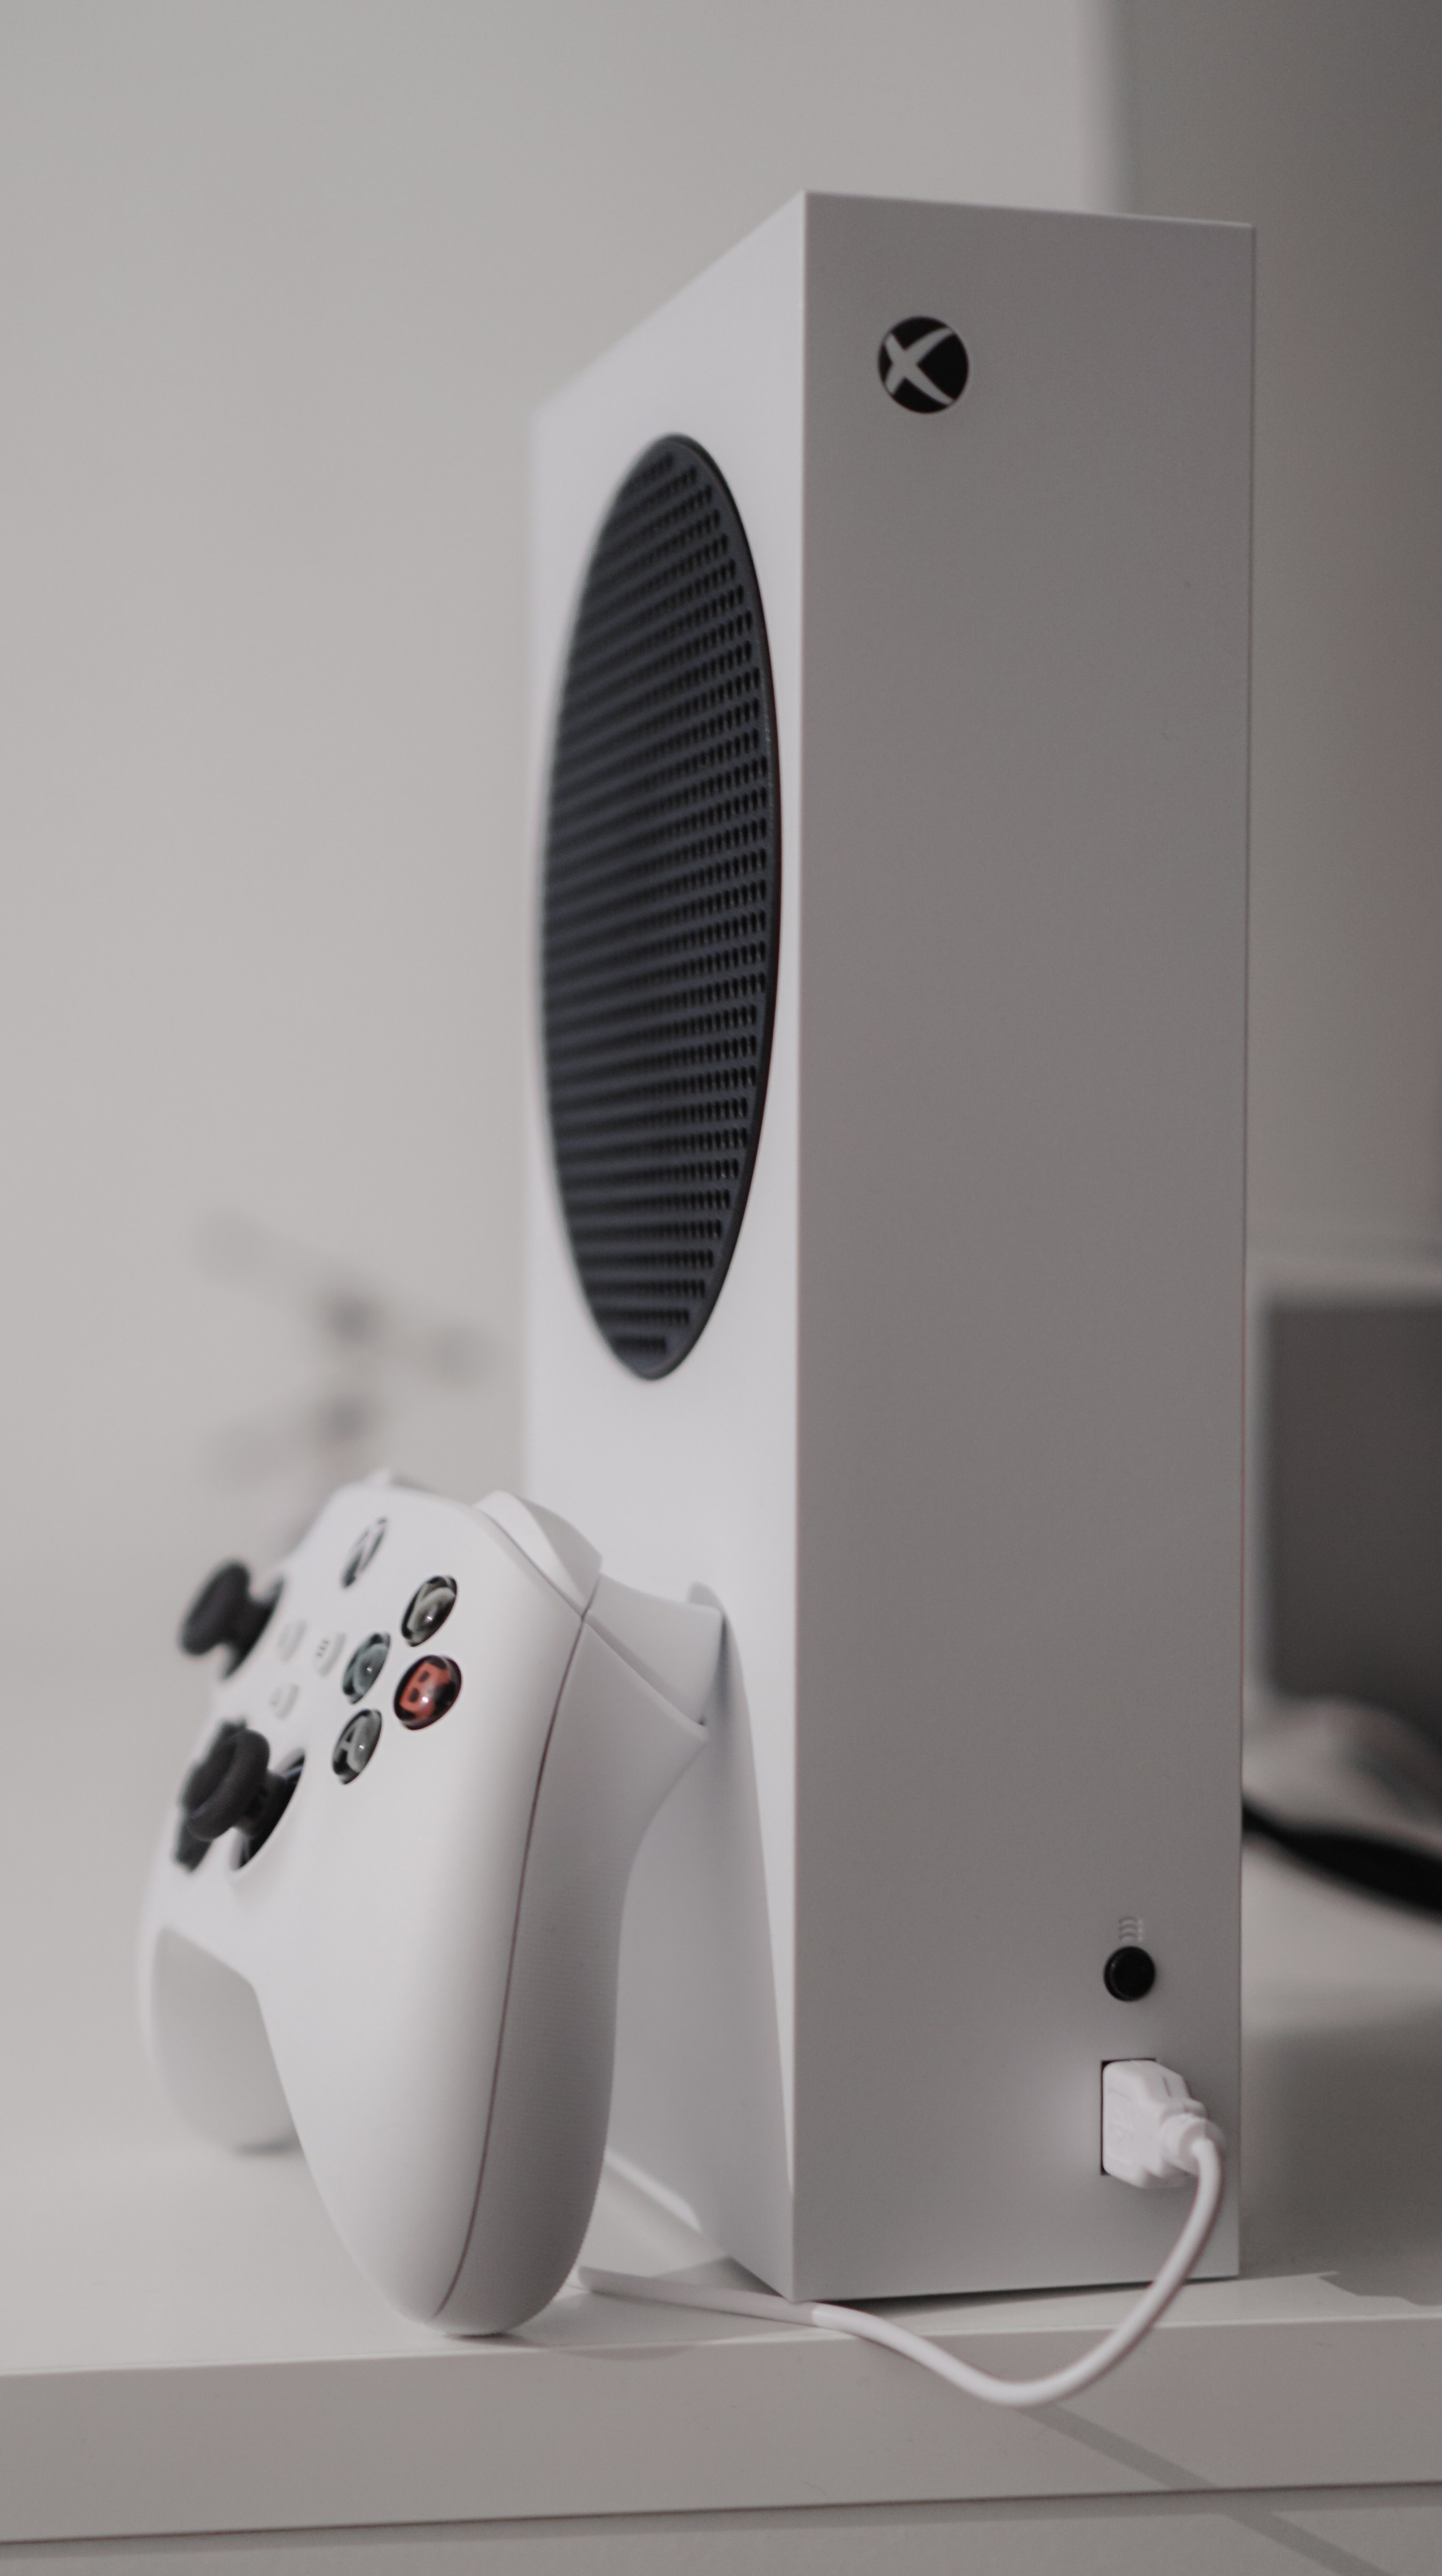 8 vantagens do Xbox Series X/S que podem fazer você desistir de um PS5